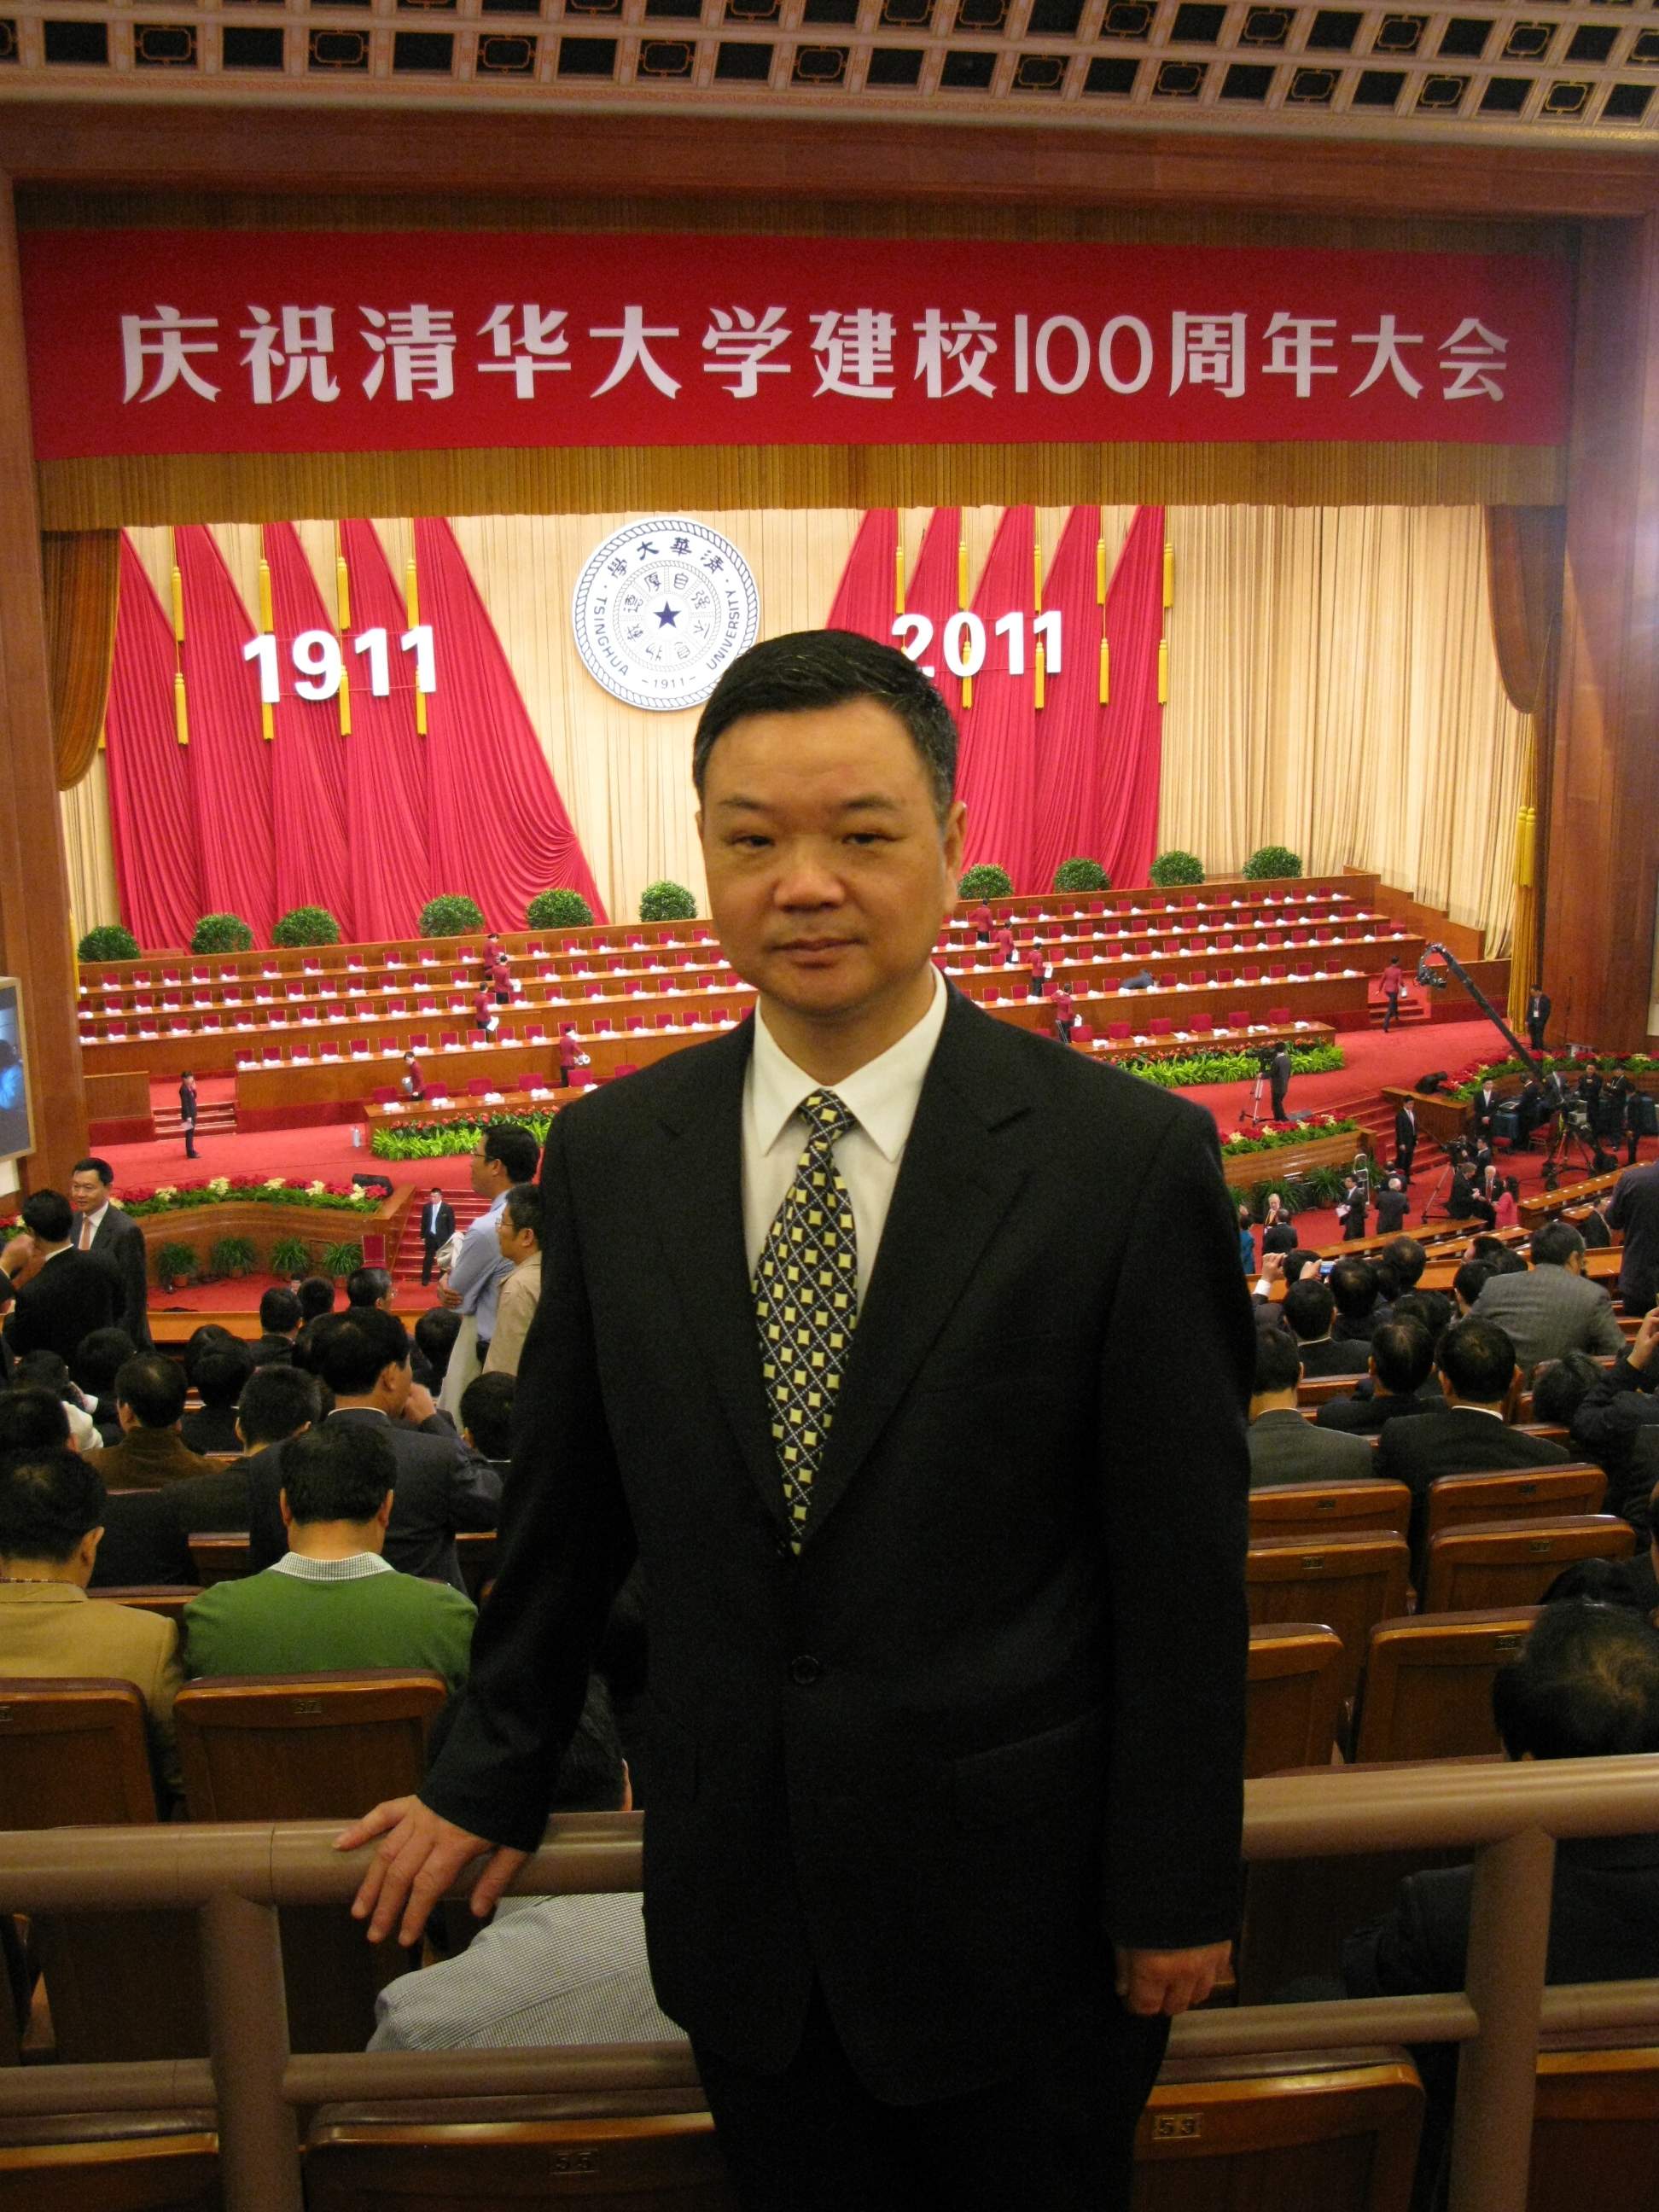 徐孝雅出席慶祝清華大學建校100周年大會